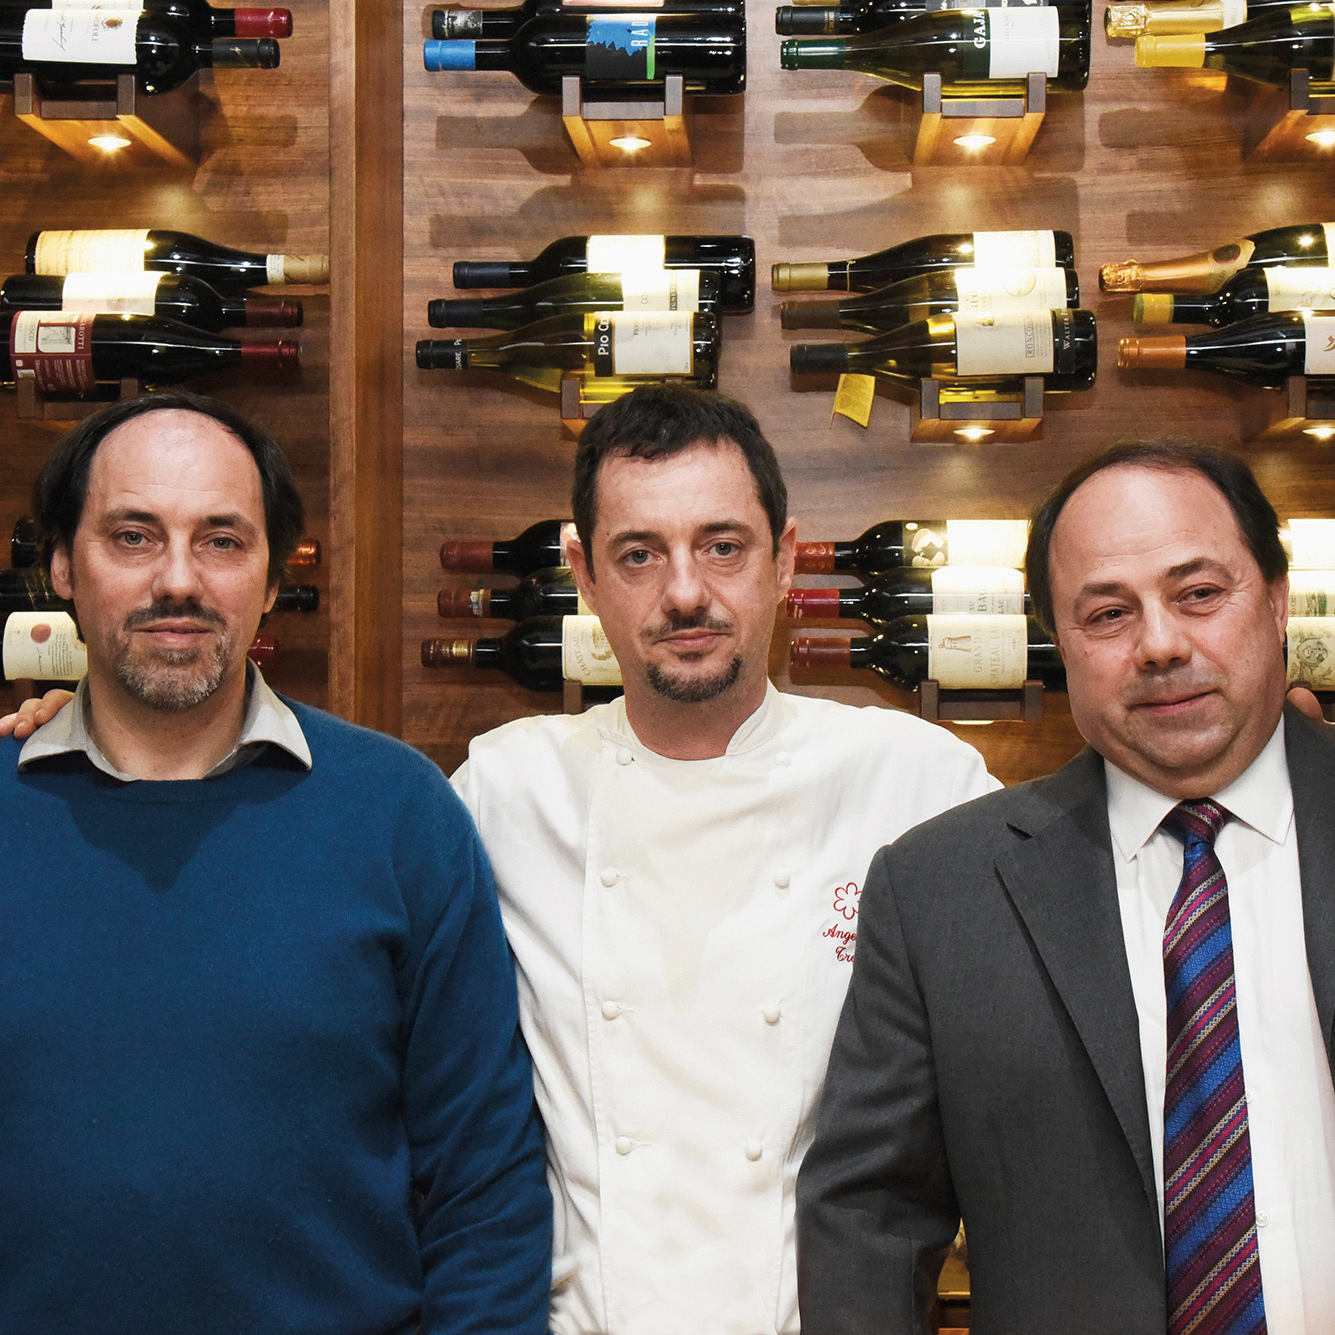 Migliori ristoranti italiani: Il Convivio Troiani tra le 100 Eccellenze Italiane per Forbes